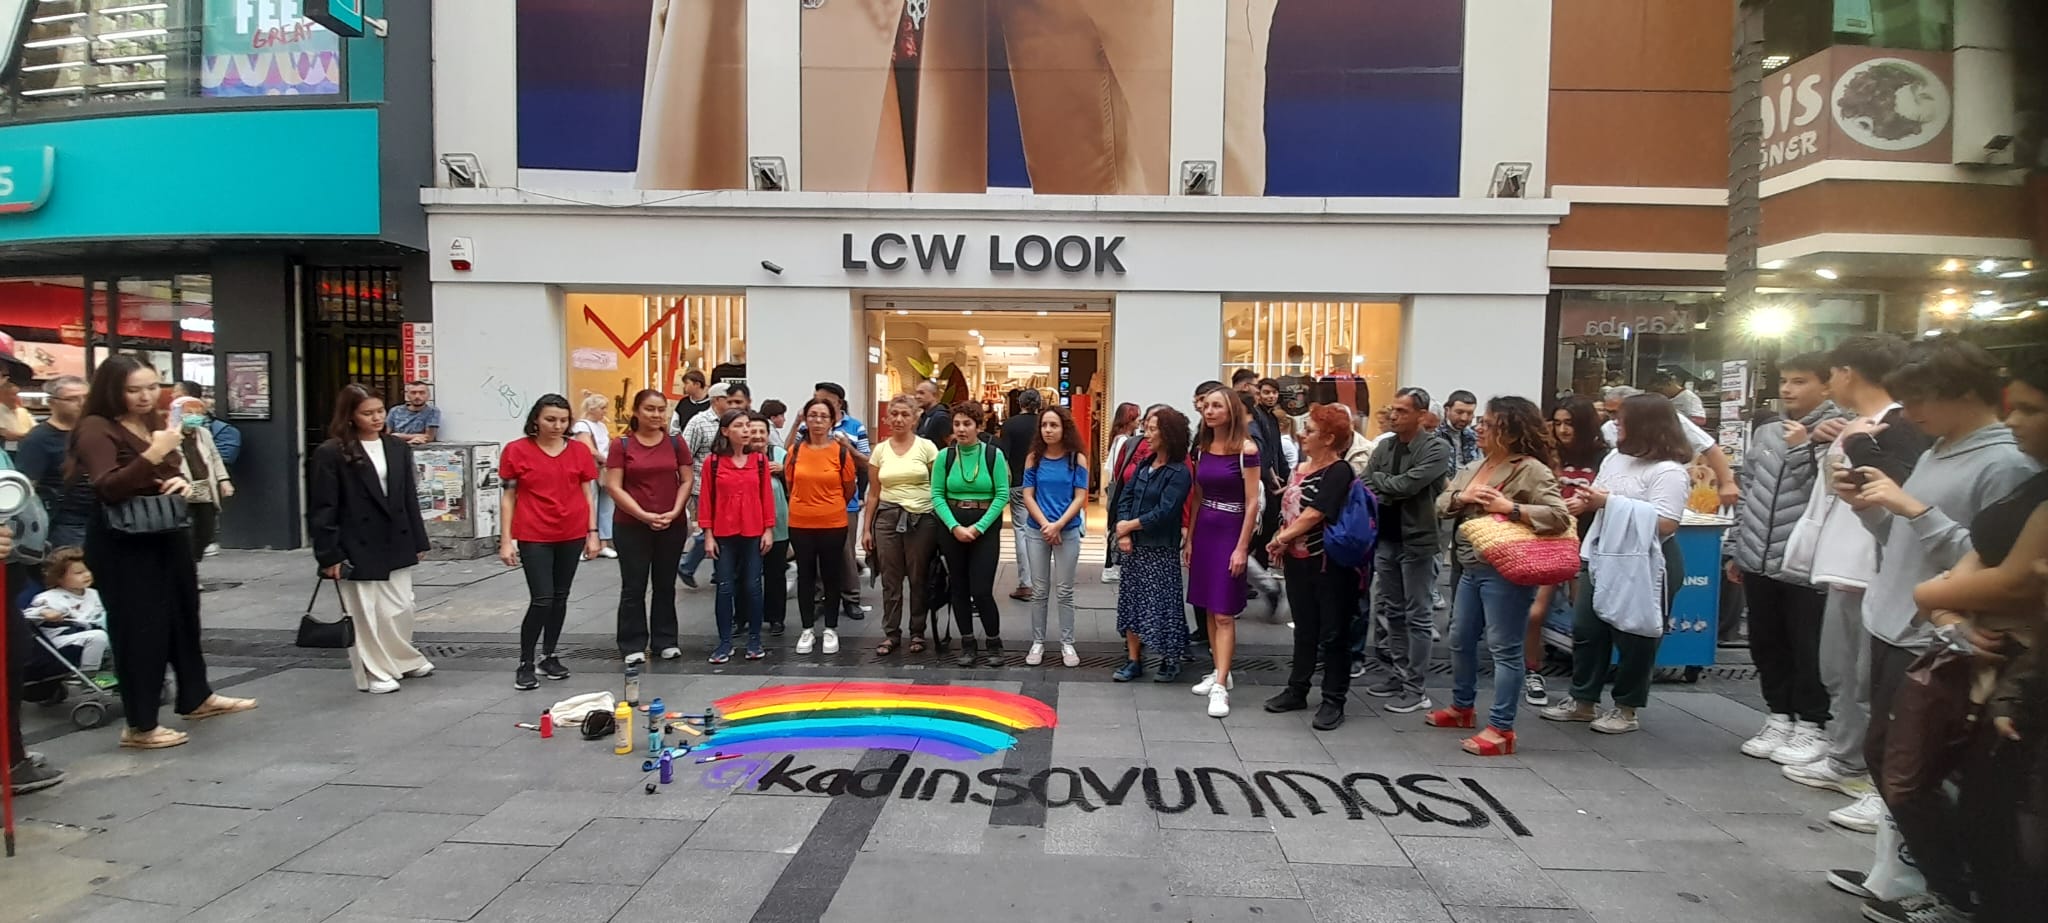 Kadın Savunma Ağı, LCW’yi protesto etti | Kaos GL - LGBTİ+ Haber Portalı Haber